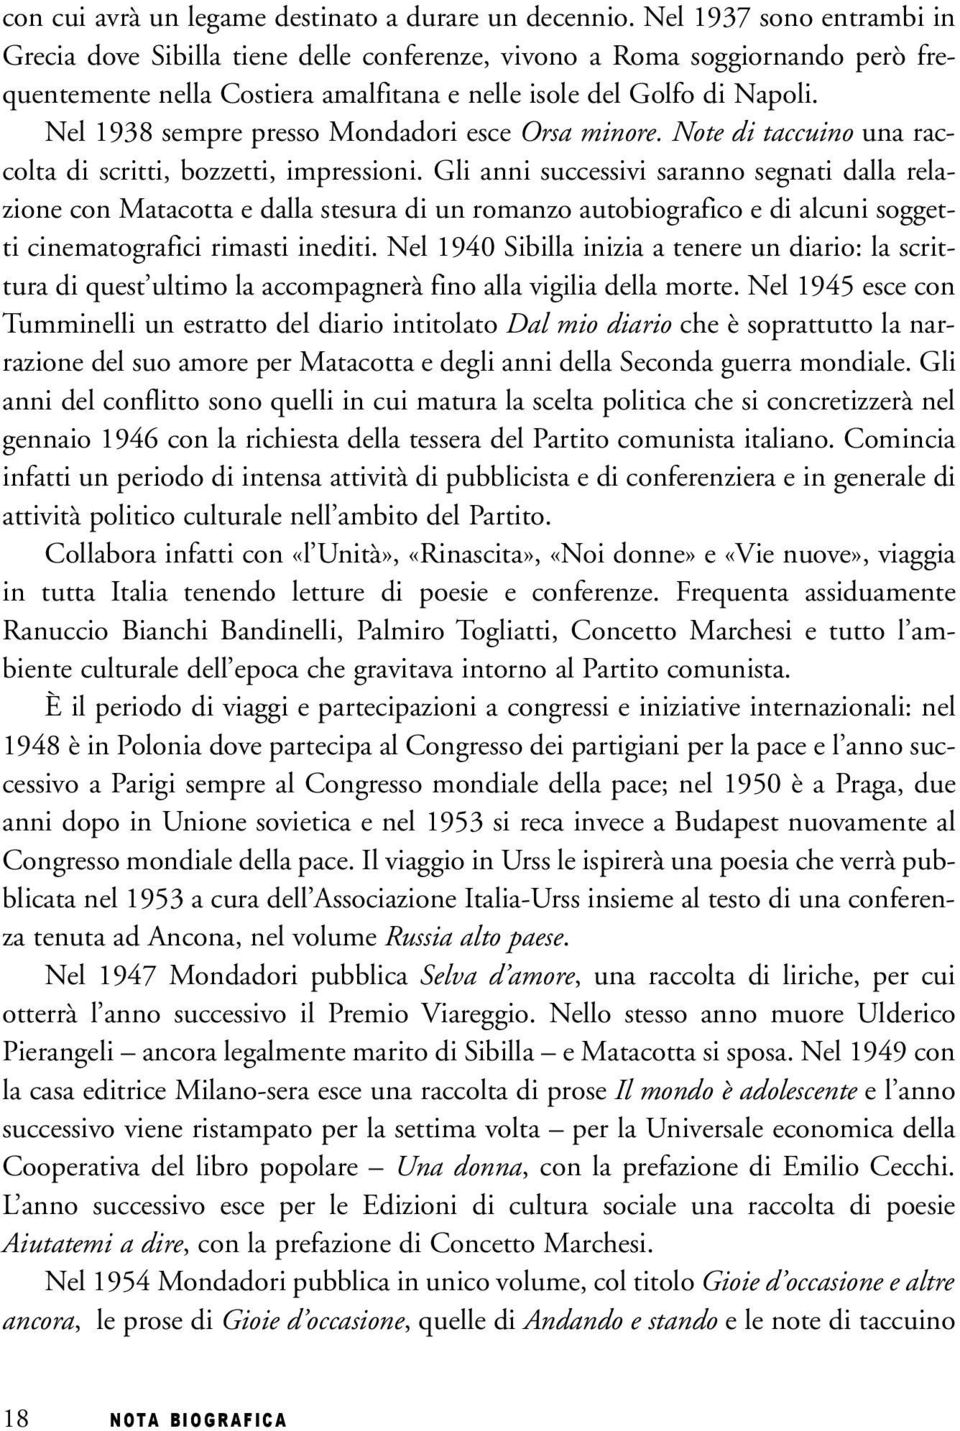 Nel 1938 sempre presso Mondadori esce Orsa minore. Note di taccuino una raccolta di scritti, bozzetti, impressioni.